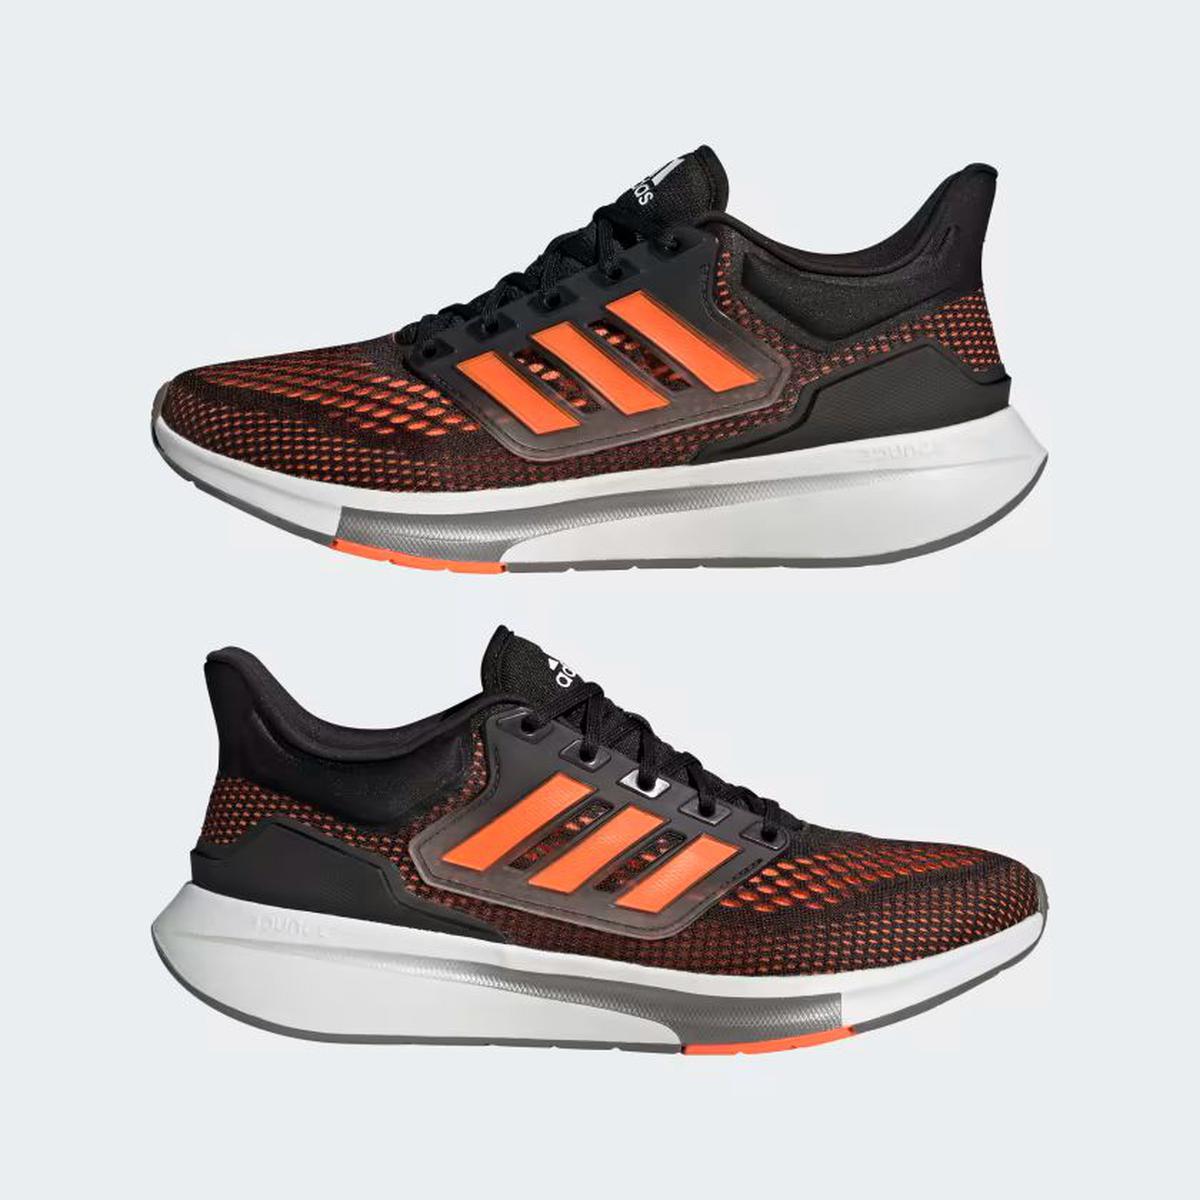 Tenis Adidas para correr | En una oferta imperdible
Foto: @ShowmundialShow